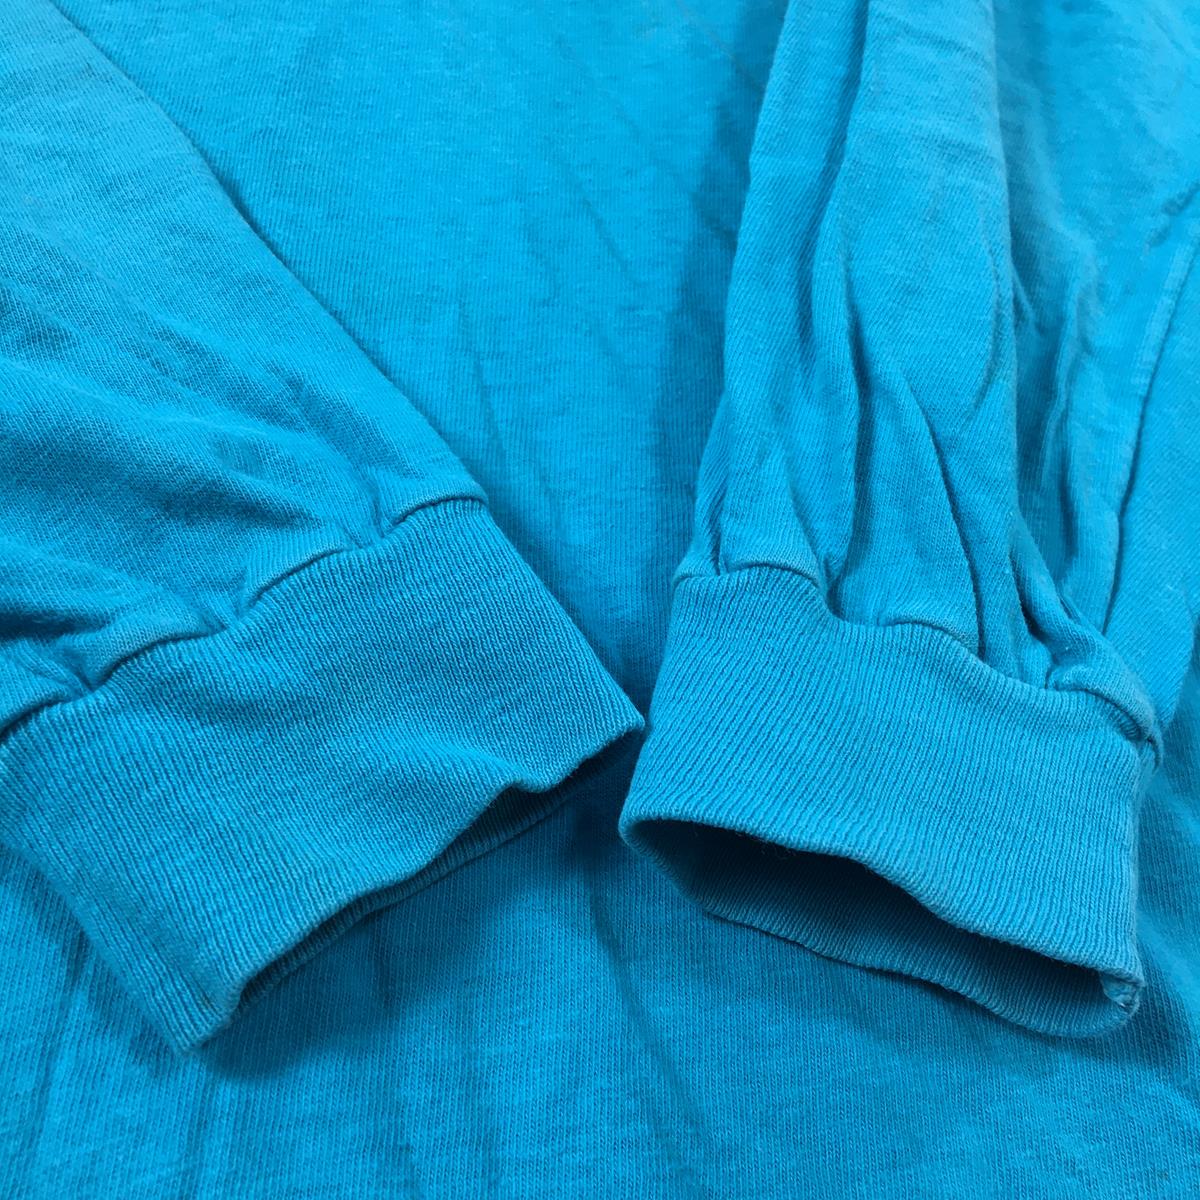 【MEN's S】 パタゴニア 1980s ロングスリーブ バックロゴ ポケット Tシャツ Long Sleeve Back Logo Pocket T-Shirt HI-CRU by stedman アメリカ製 ビンテージ 入手困難 PATAGONIA Turquoise ブルー系